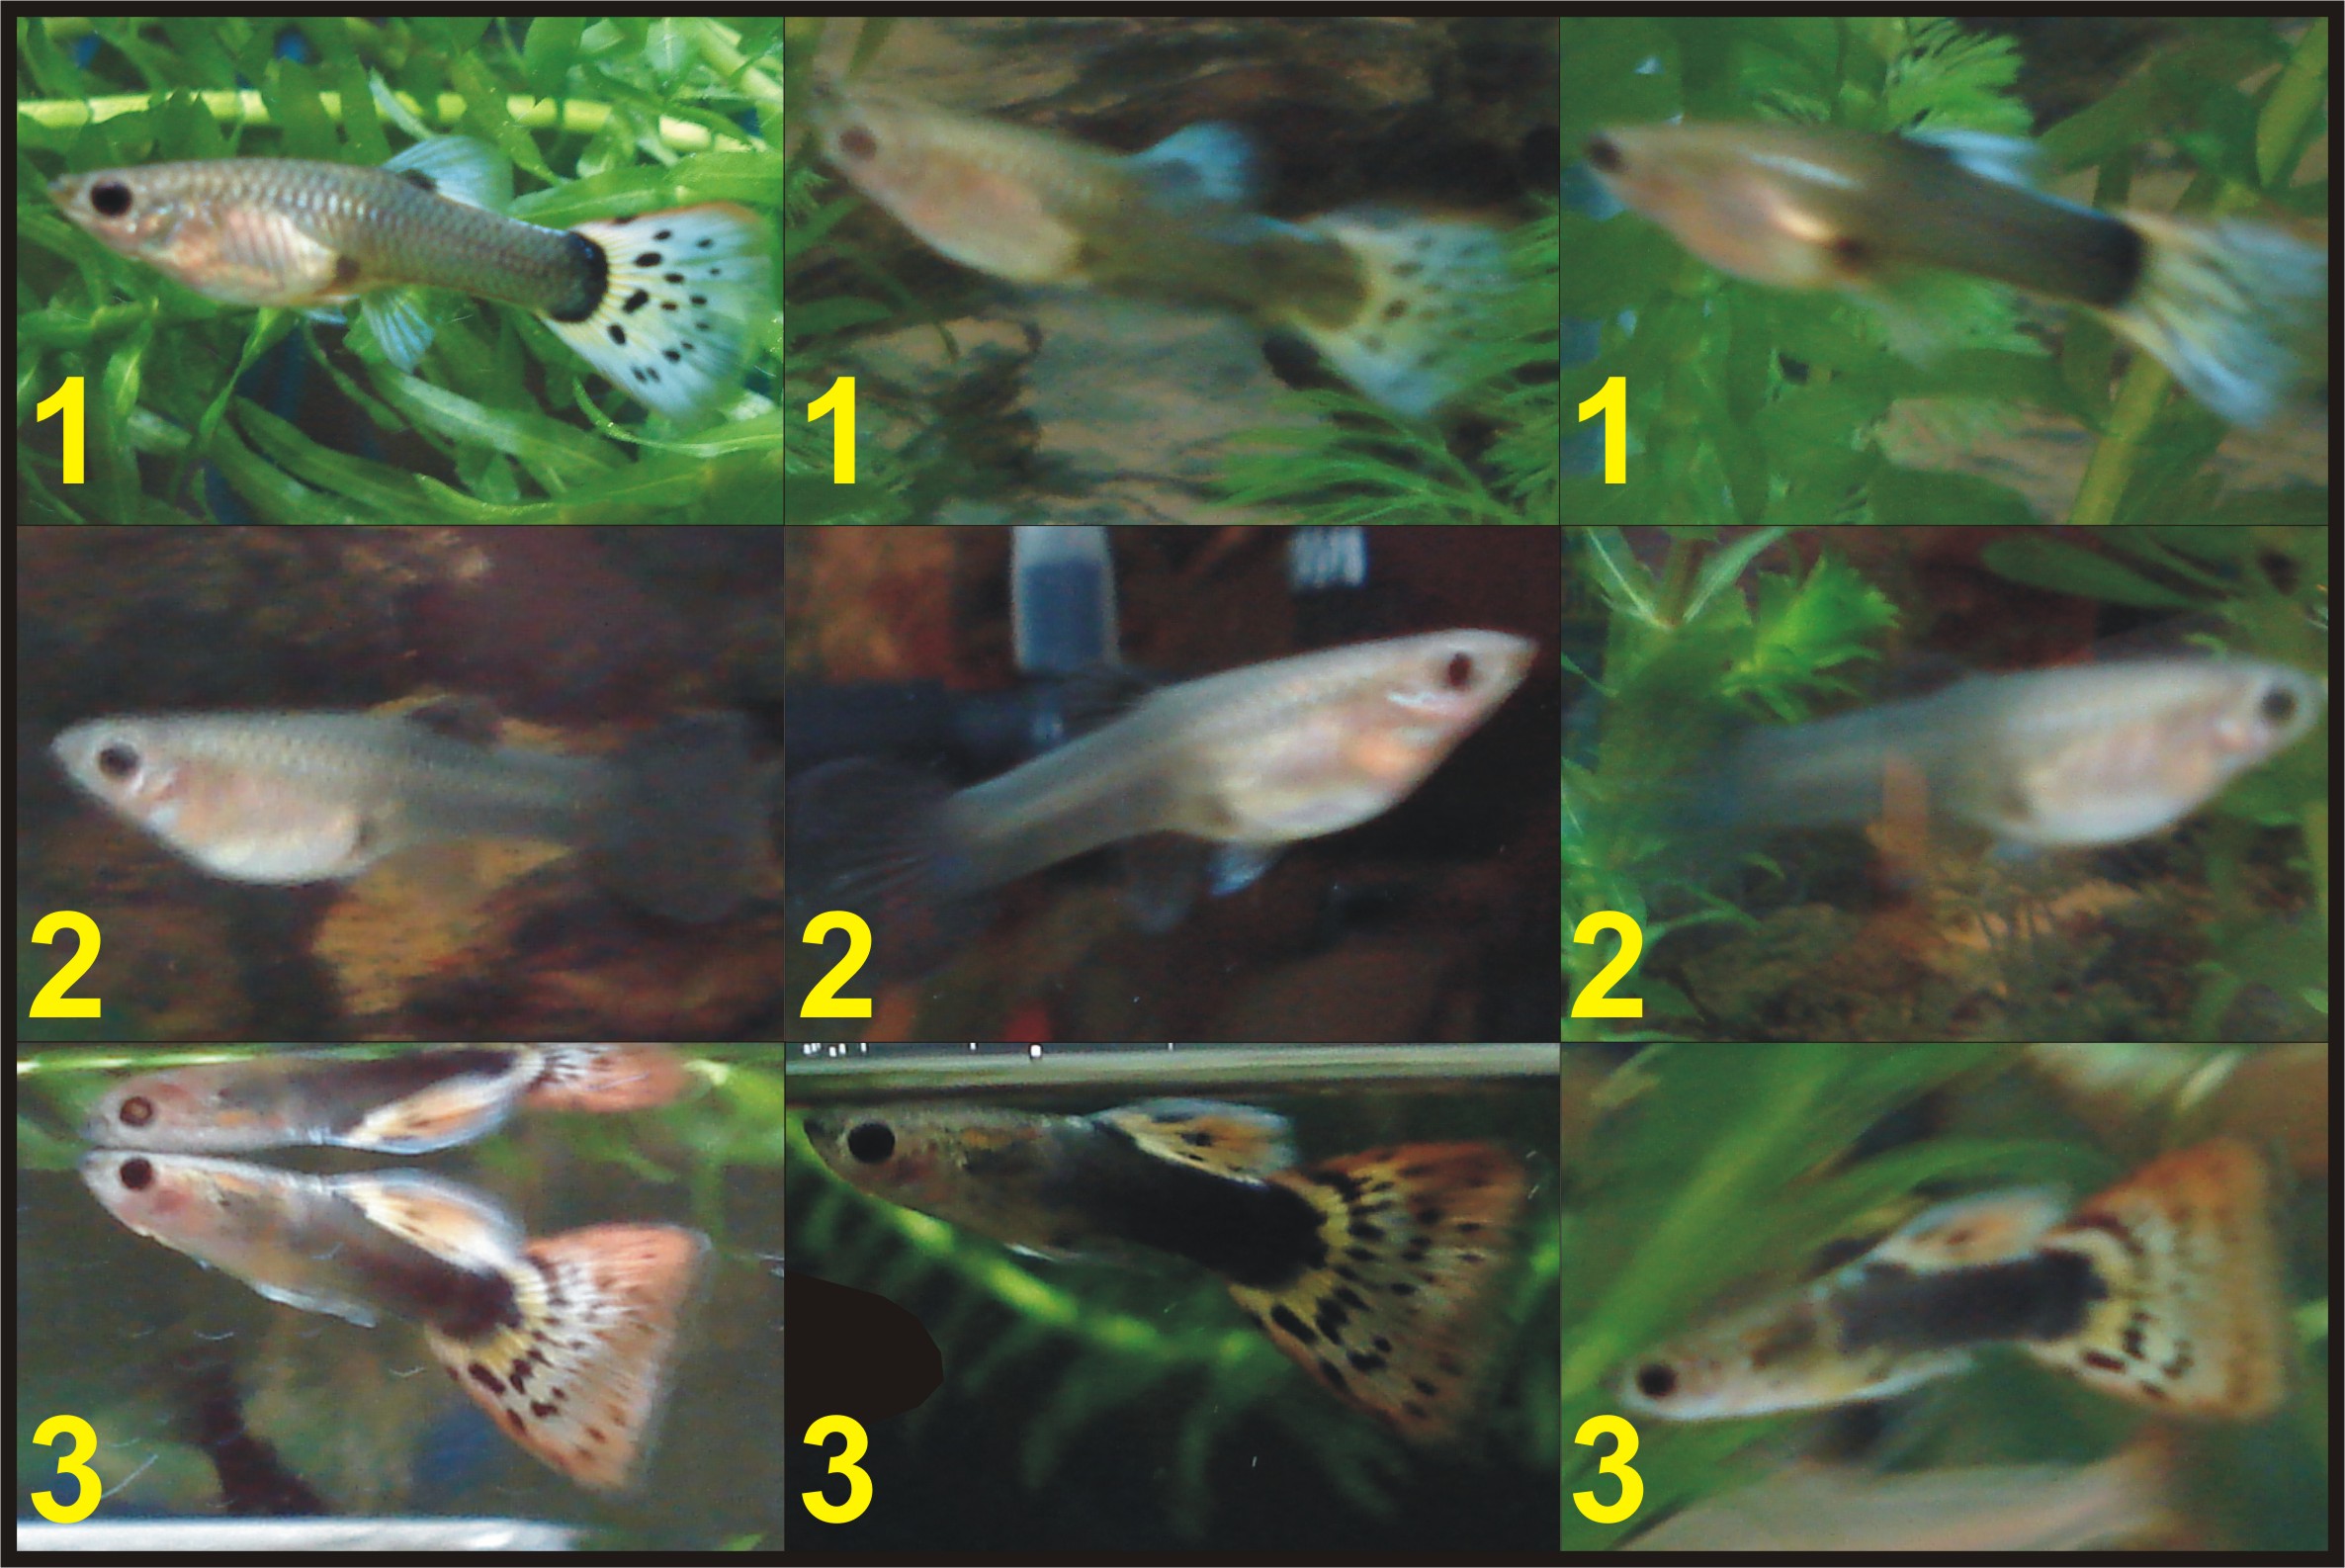 Мальки гуппи в общем аквариуме: сколько и как быстро растут, чем кормить, как определить пол, когда пересаживать